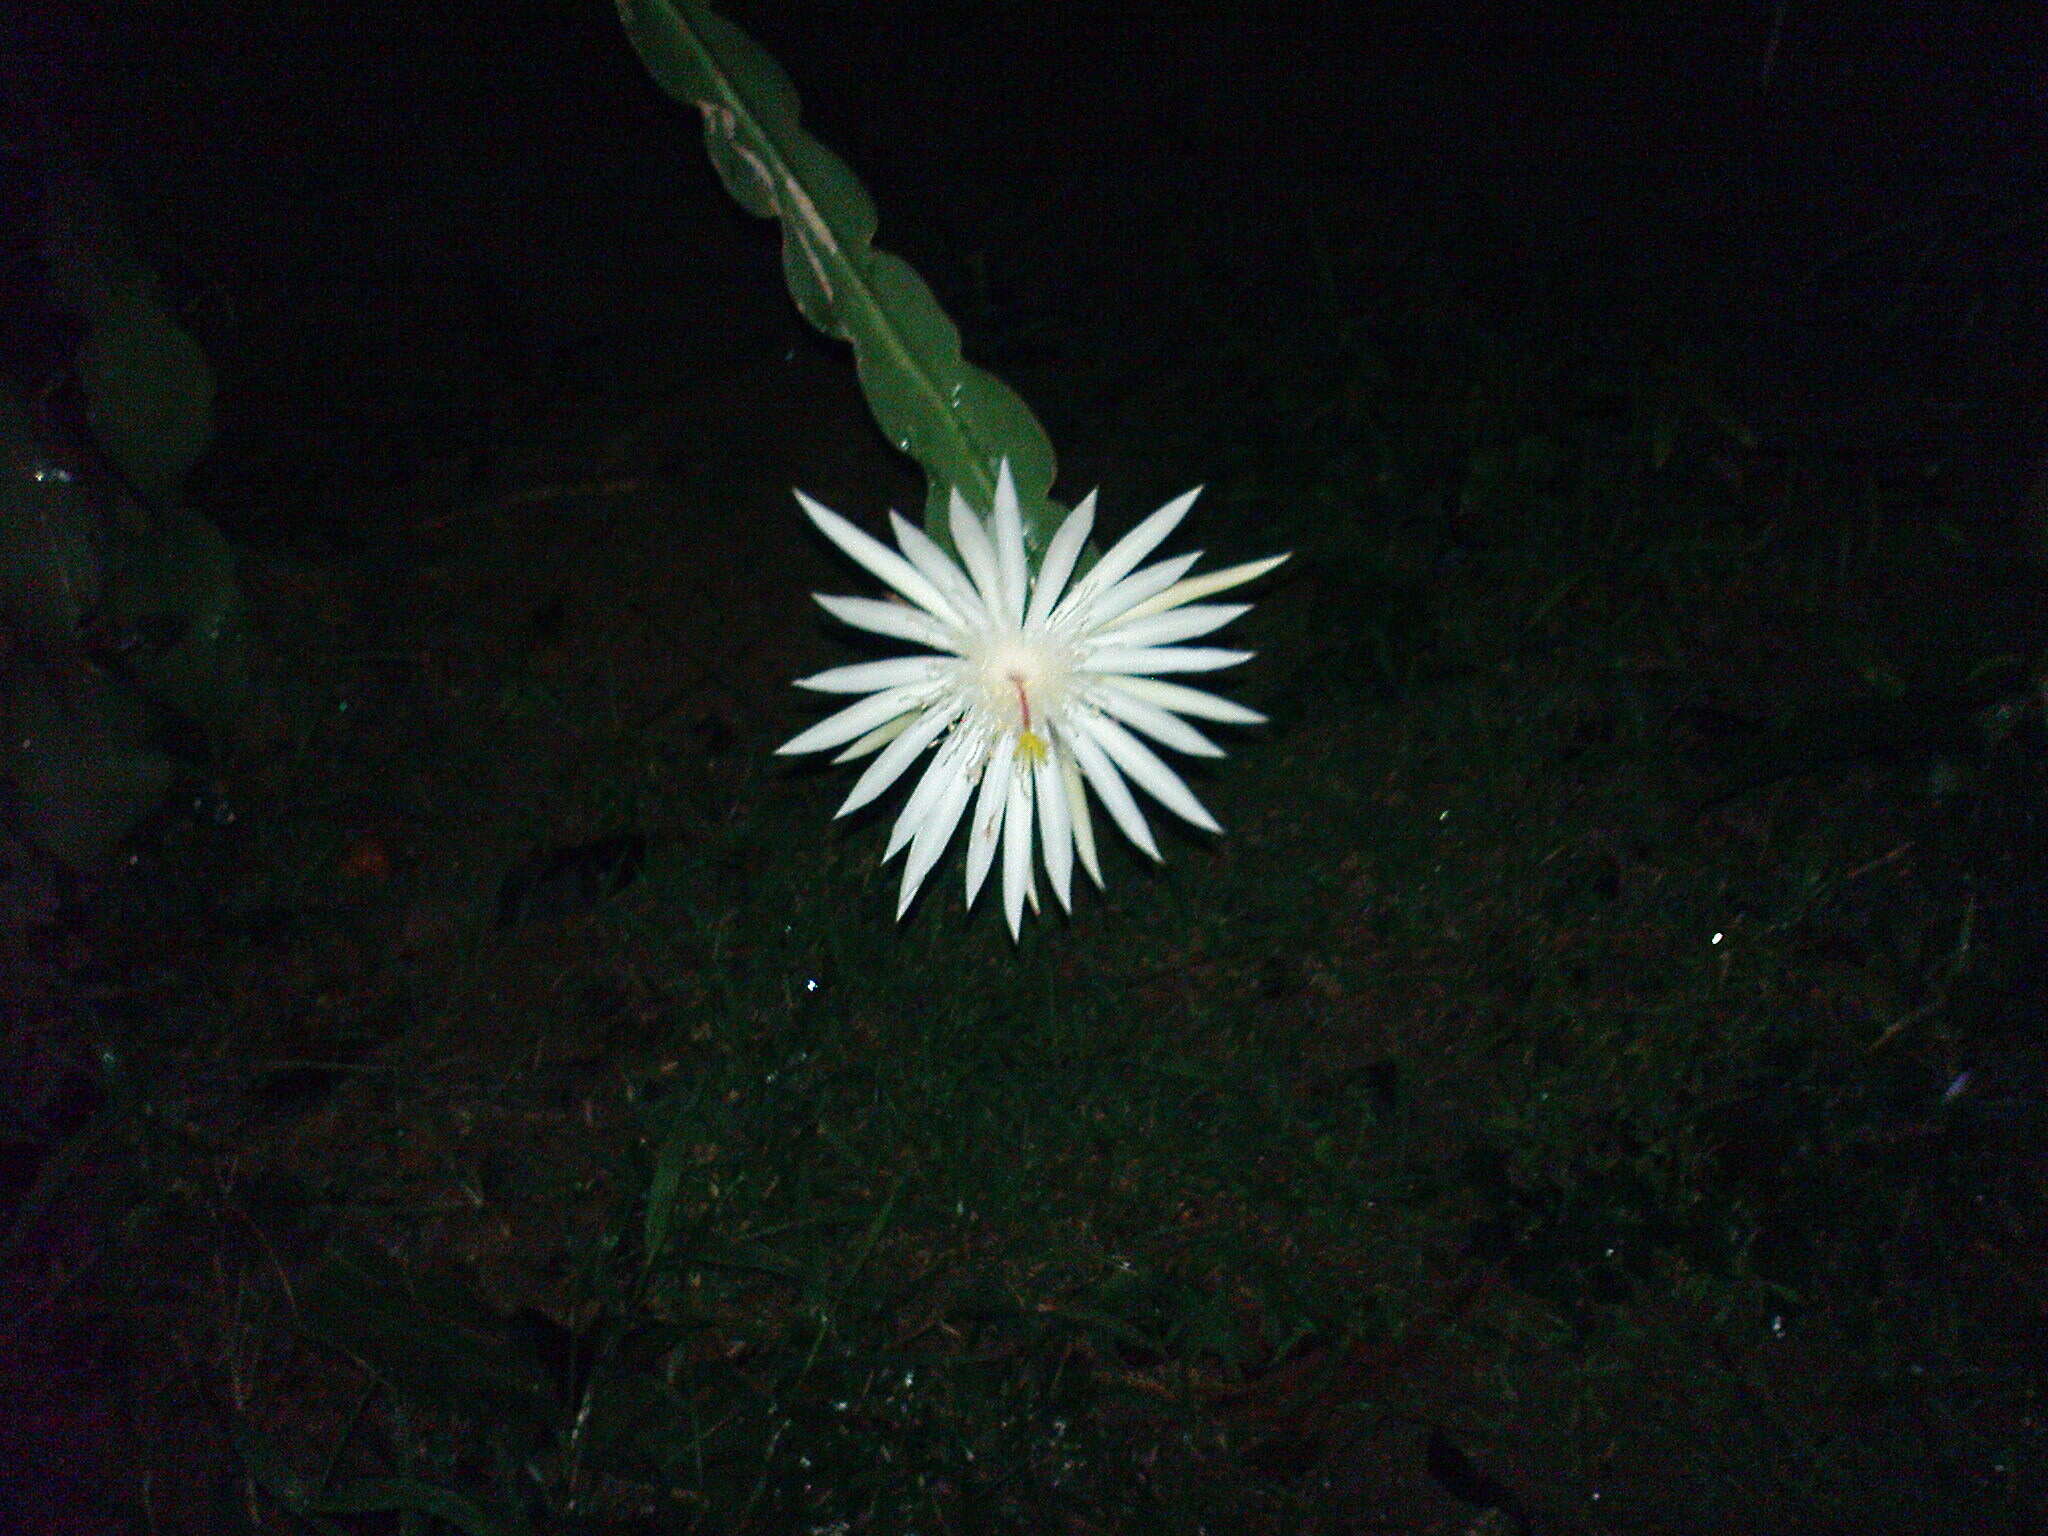 Image of Nightblooming Cactus